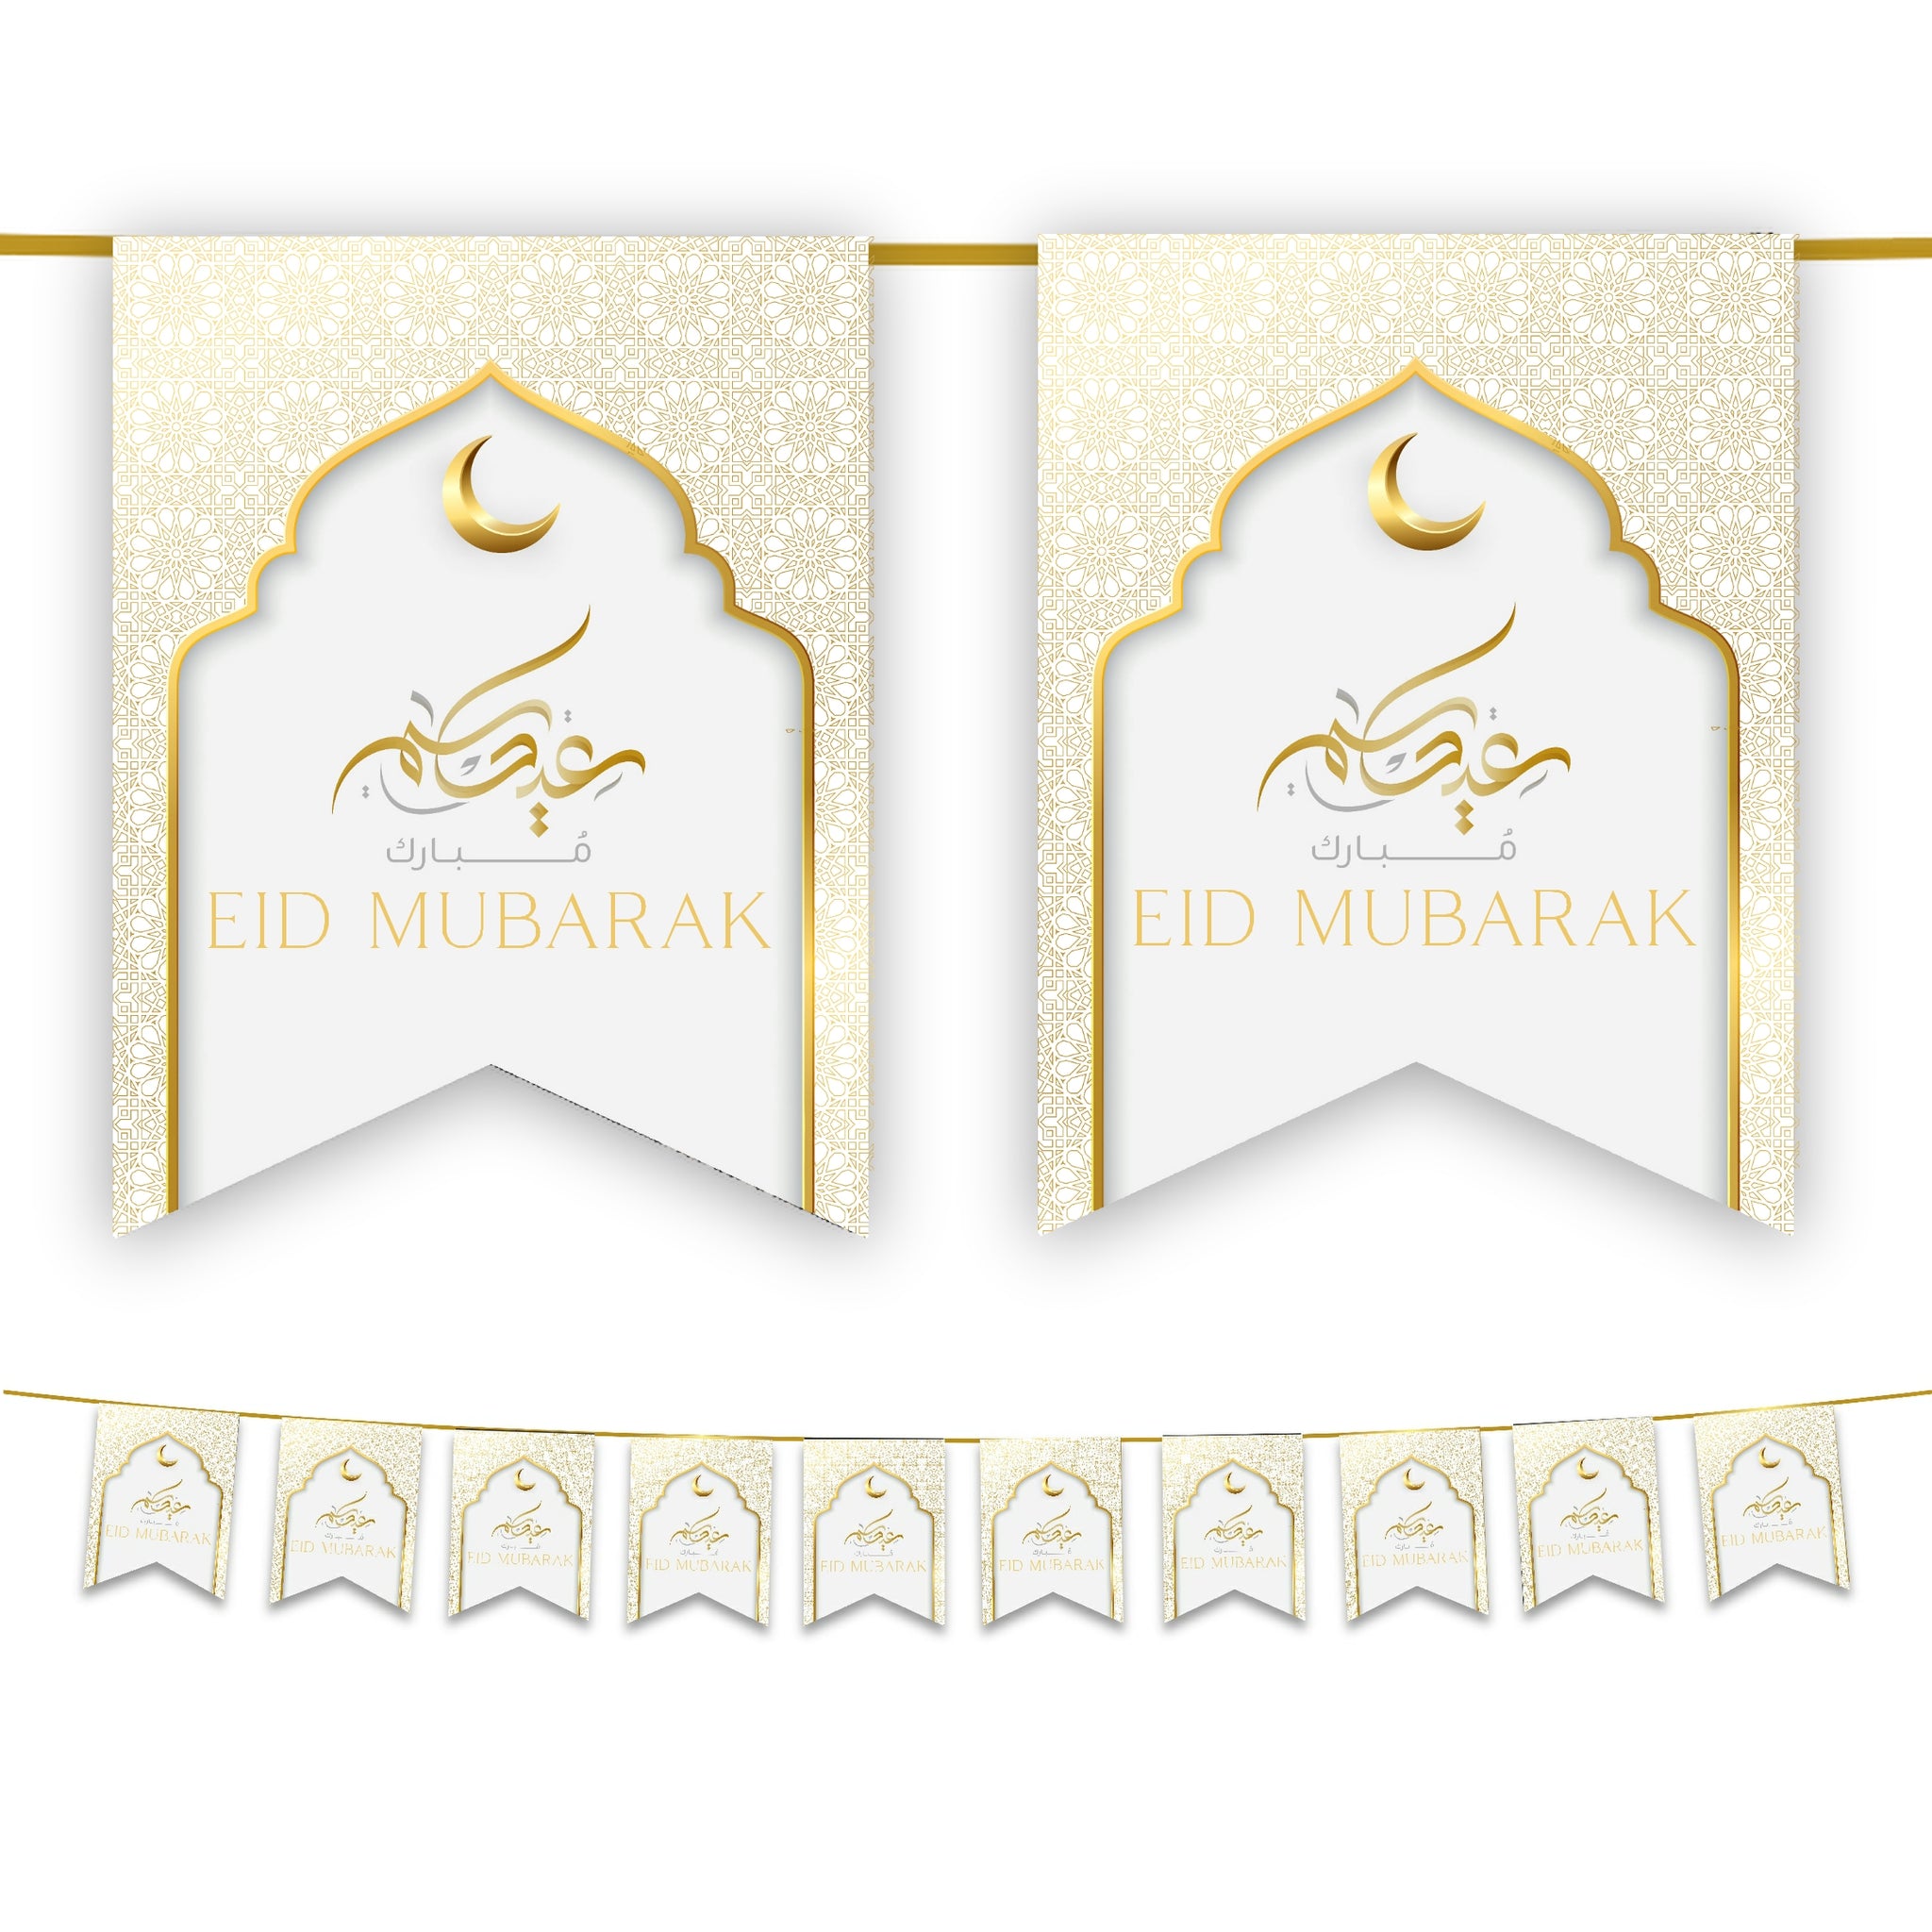 Eid Mubarak Bunting - White & Gold Flags Decoration